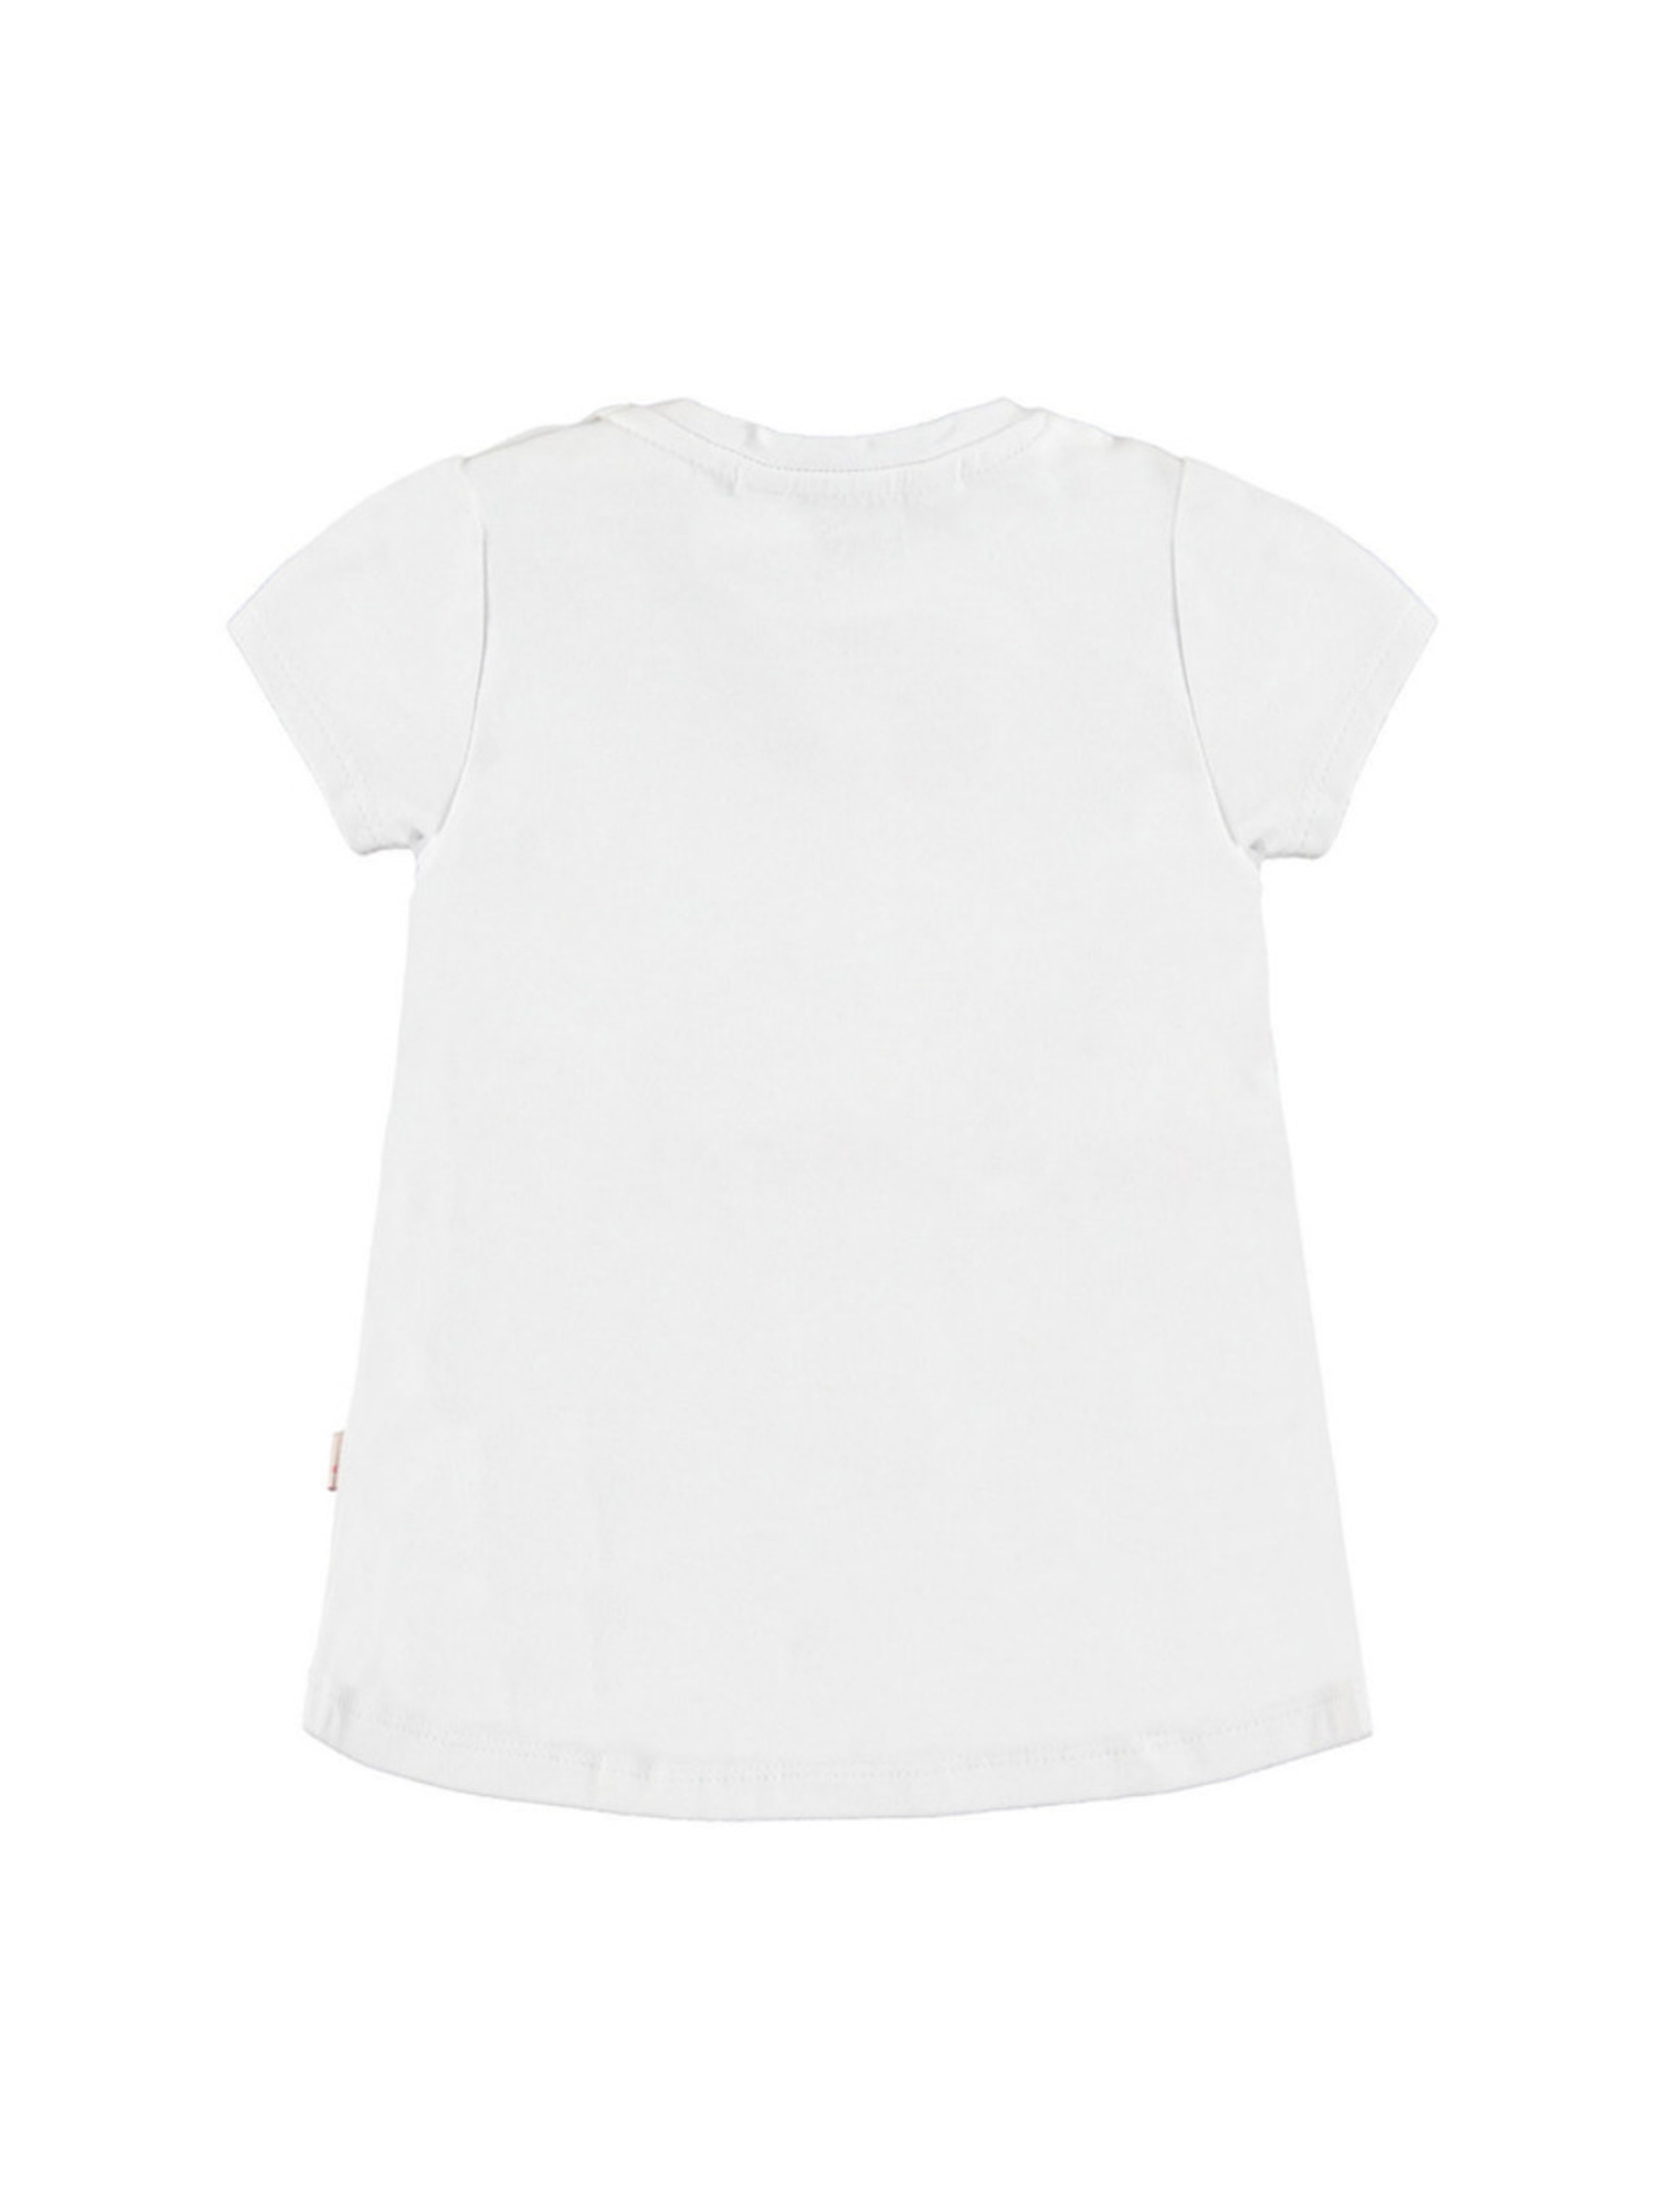 Dziewczęca koszulka z krótkim rękawem biała